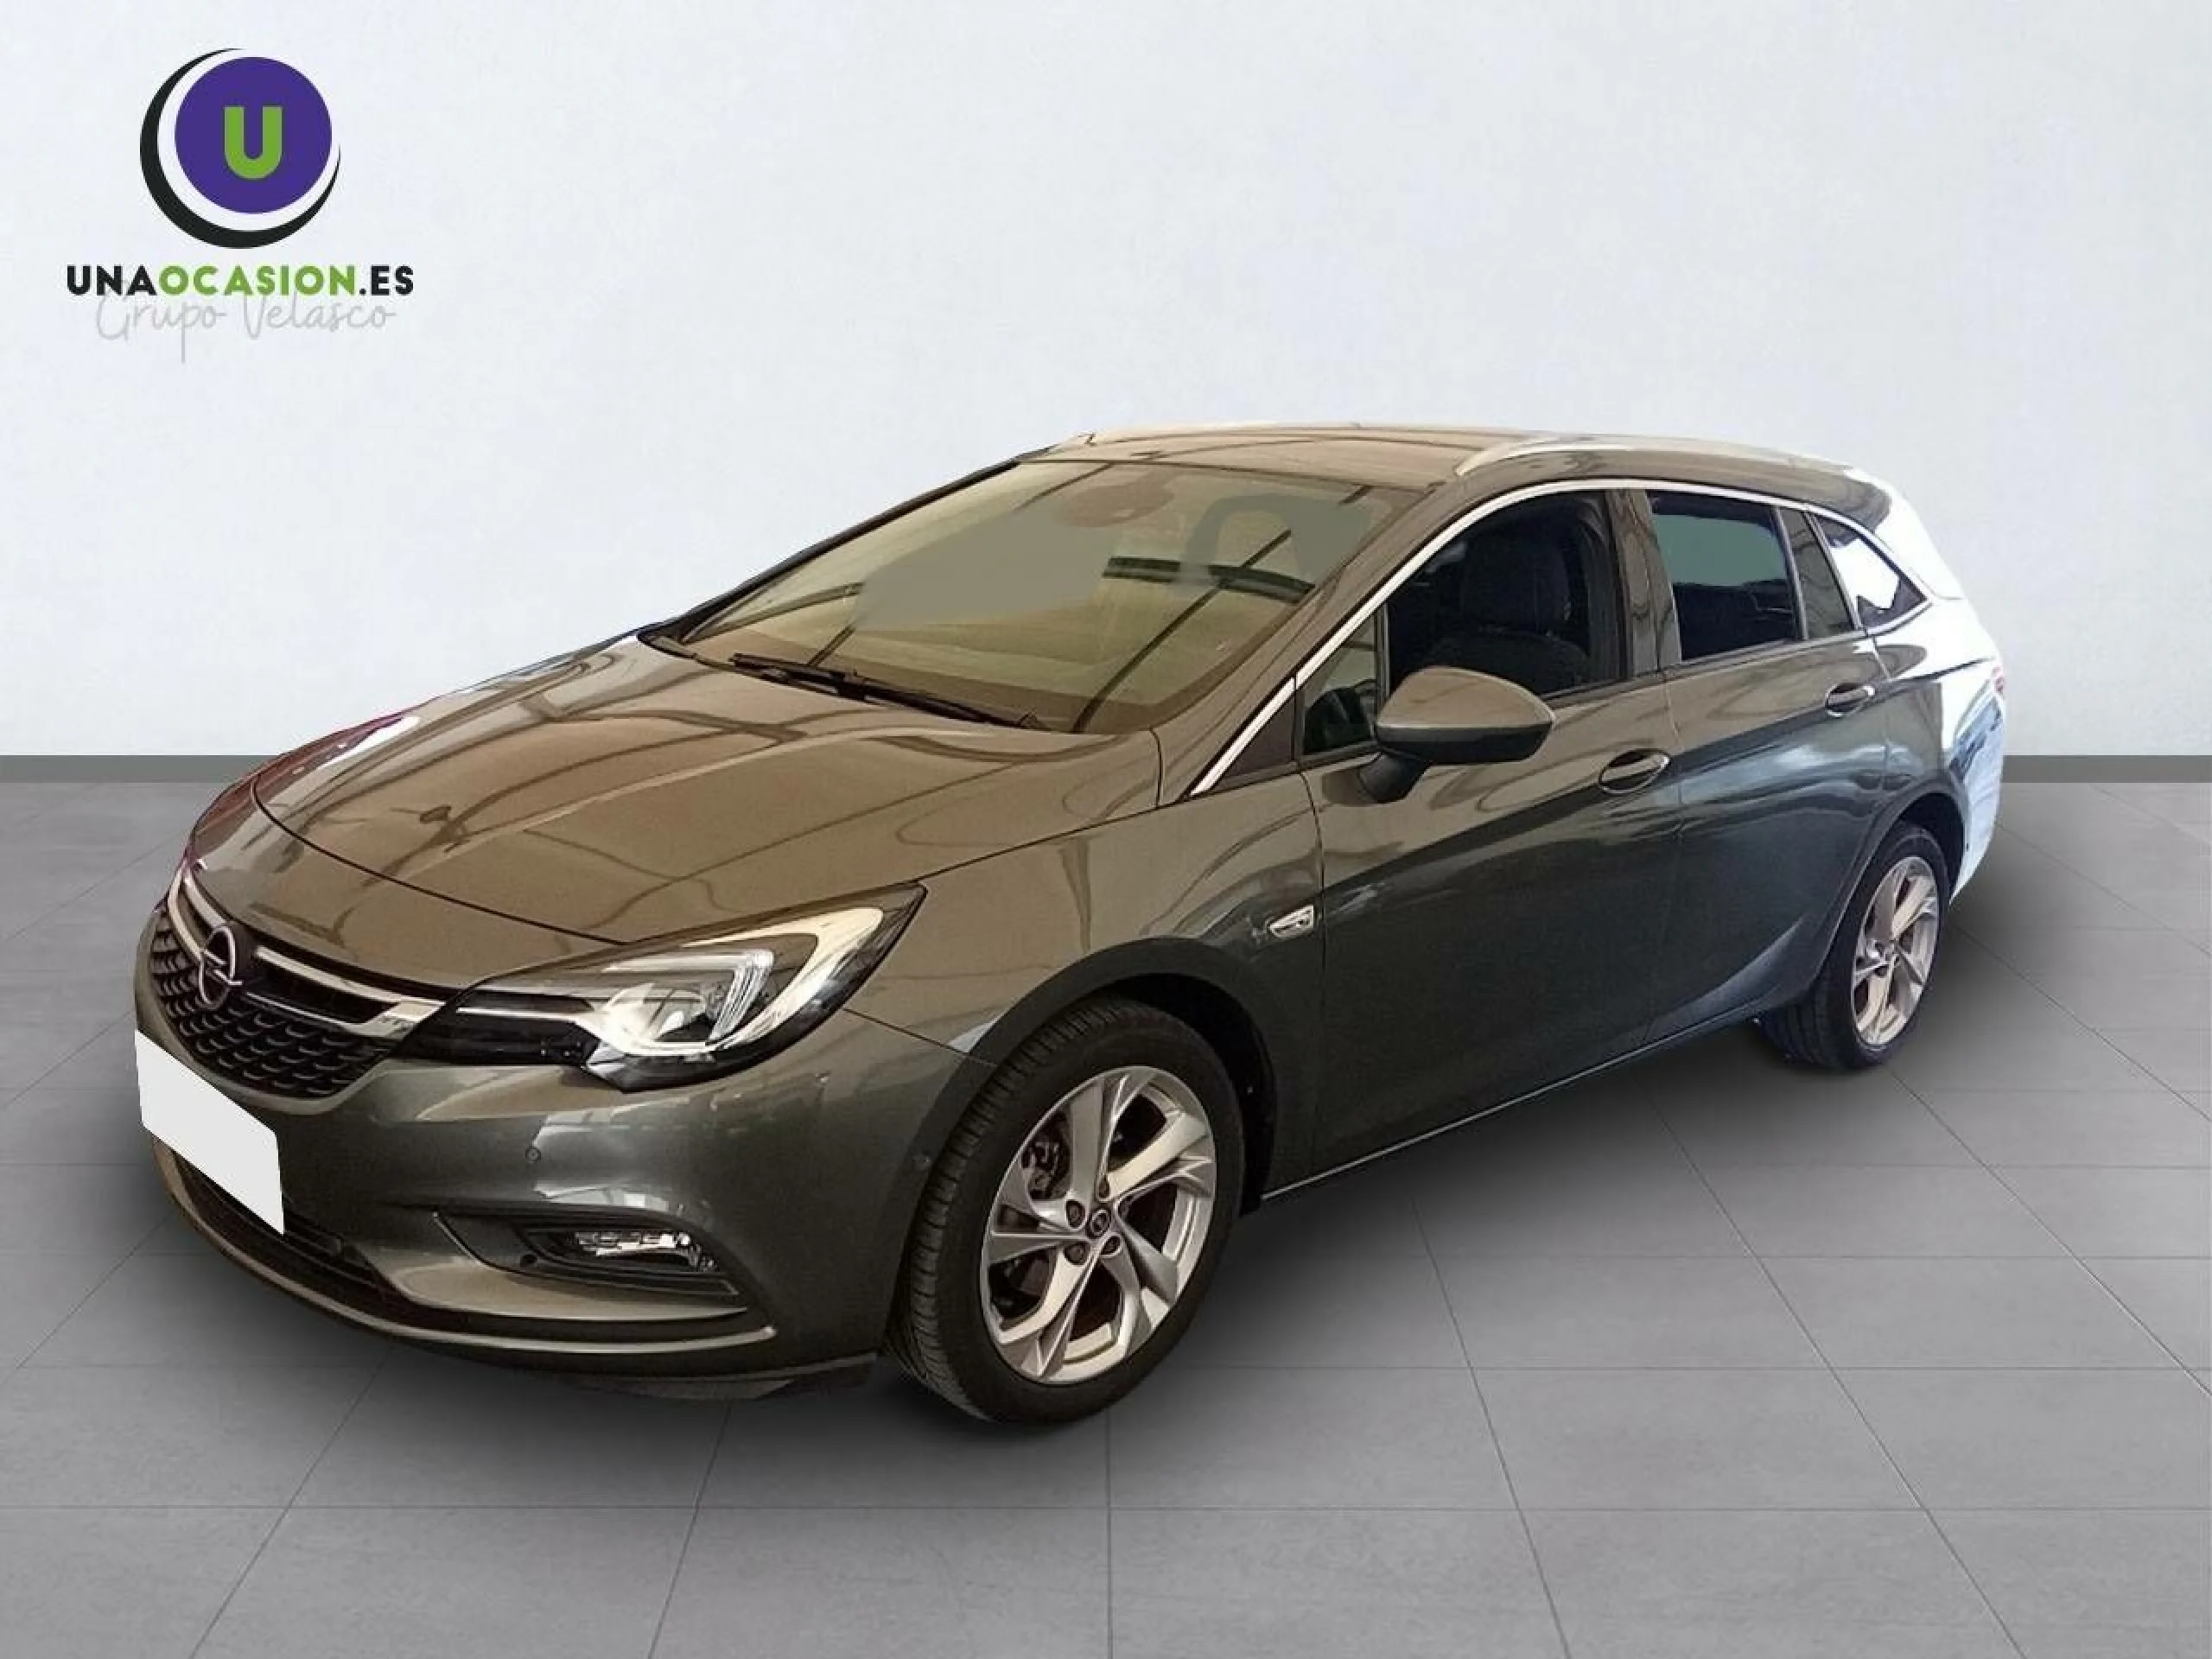 2018 Opel Astra K 1.4 Turbo (150 CV)